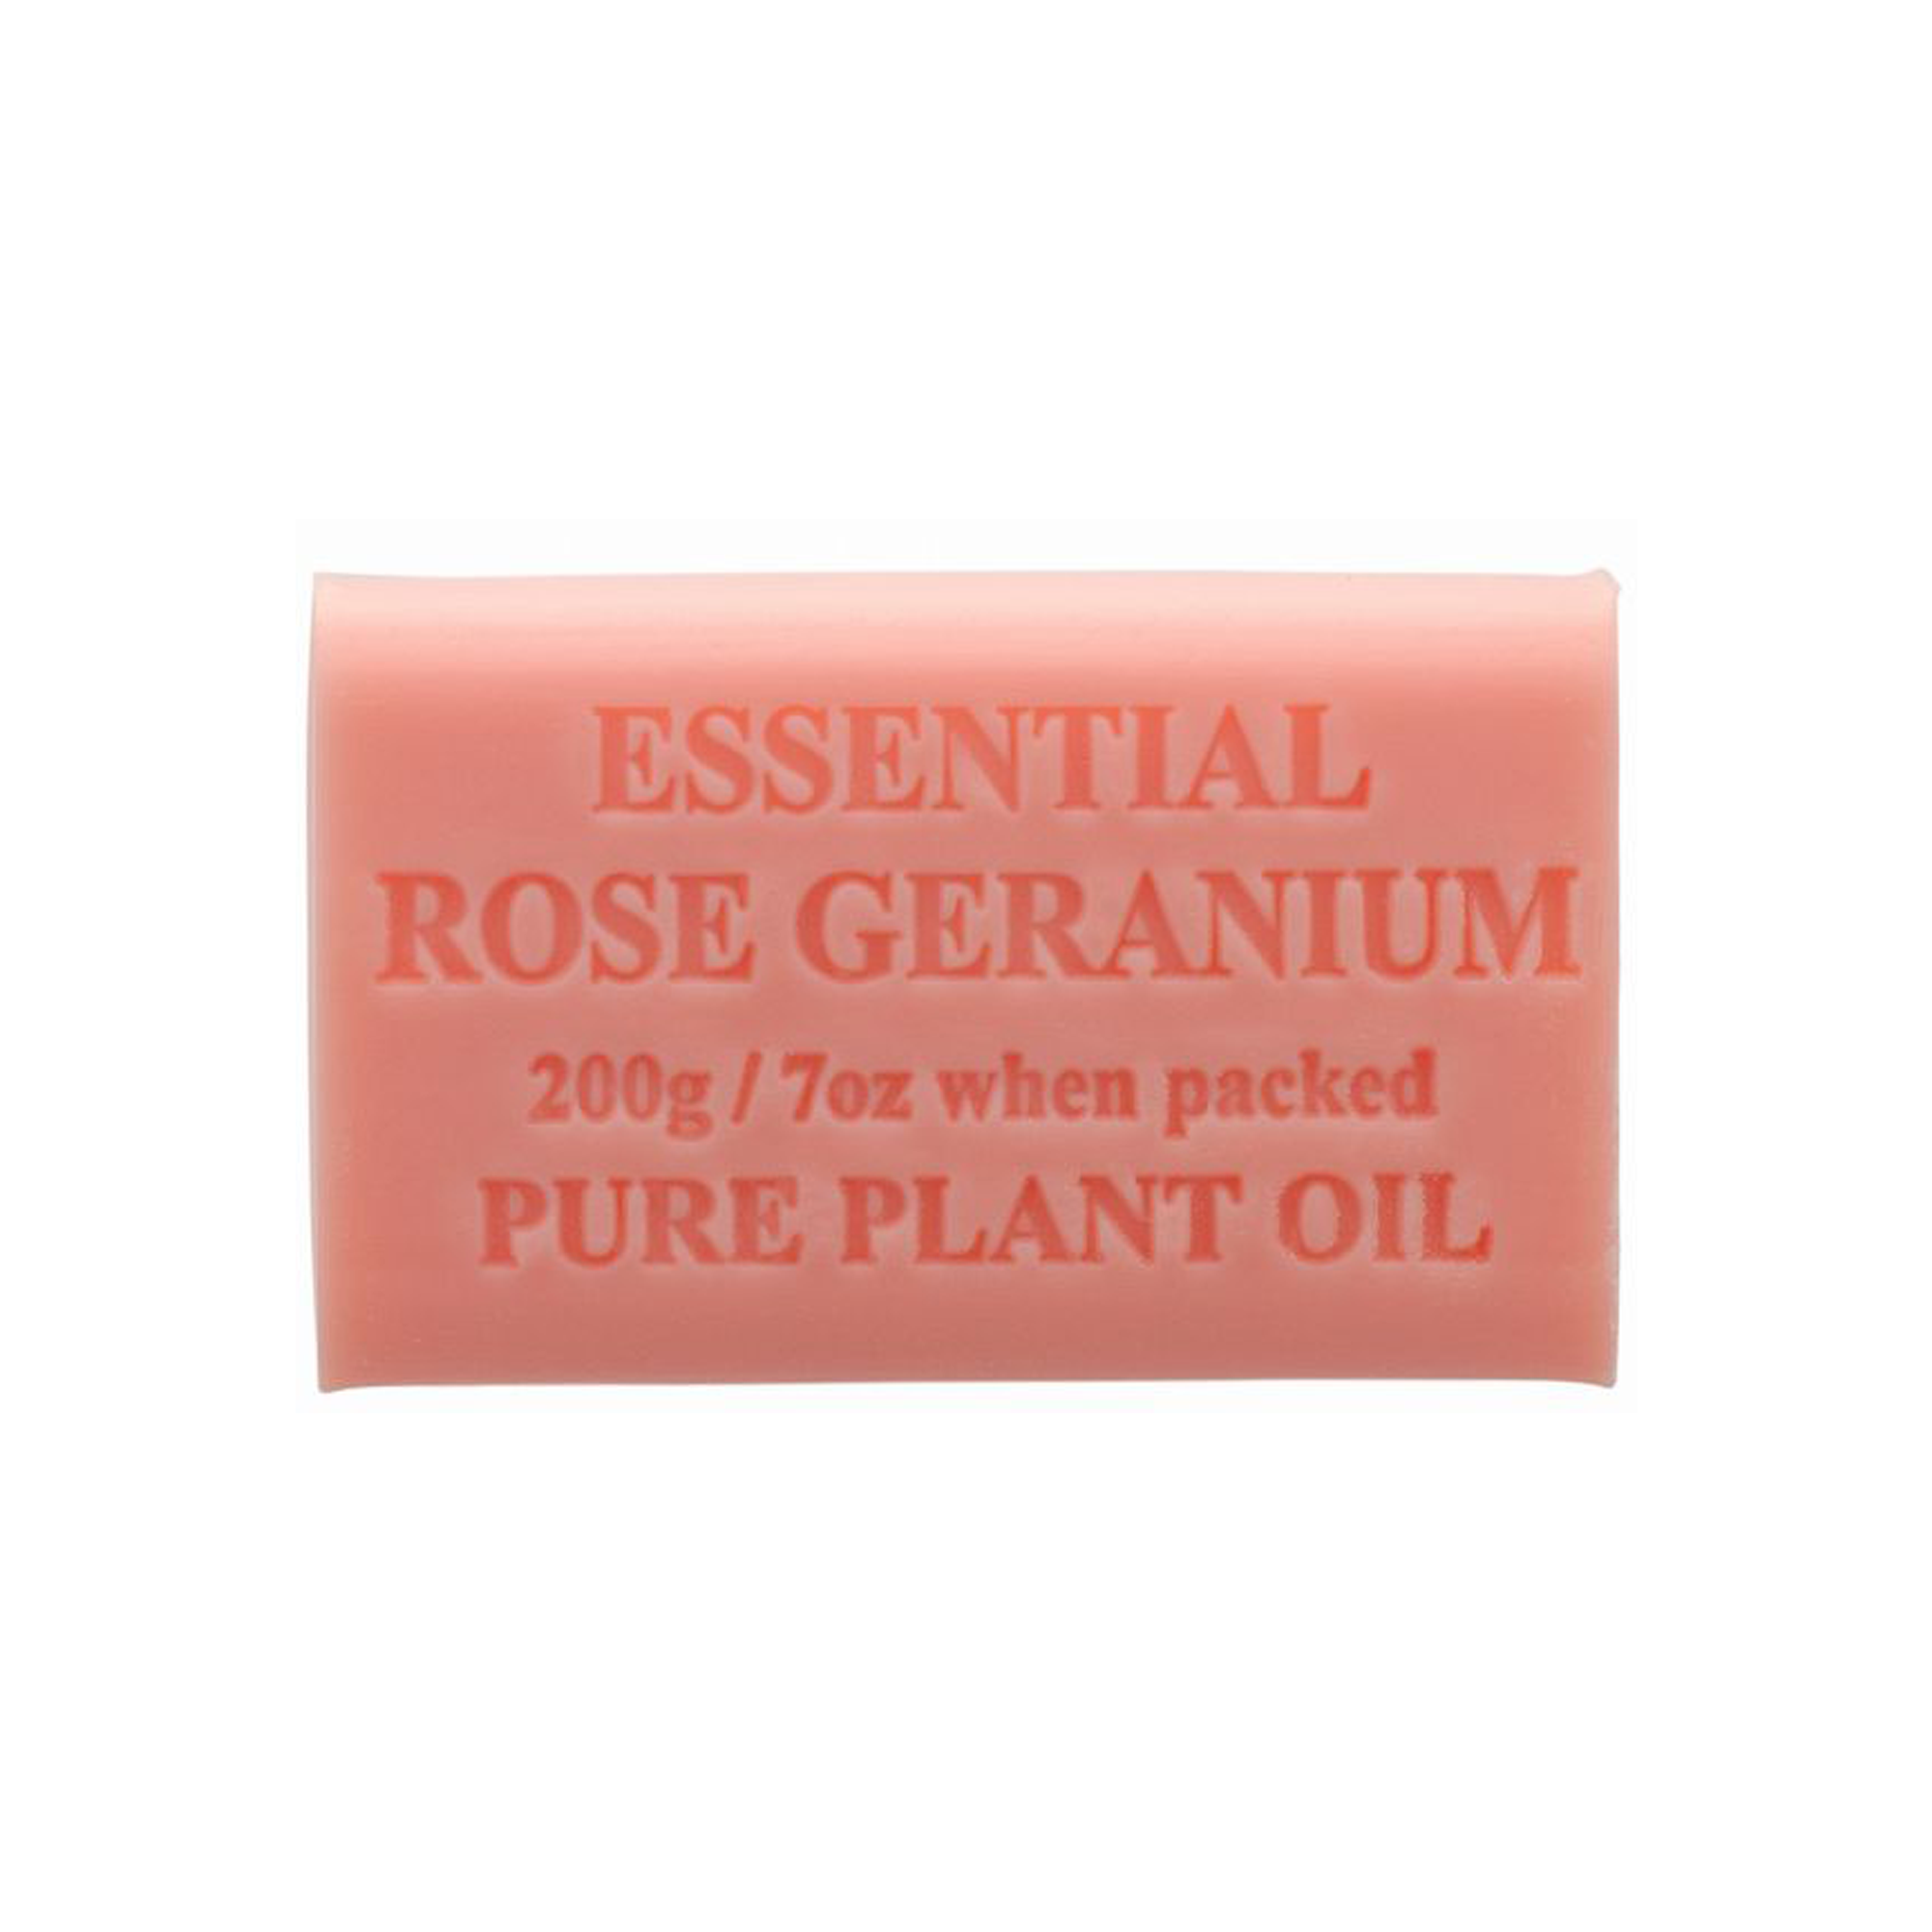 Essential Rose Geranium 200g